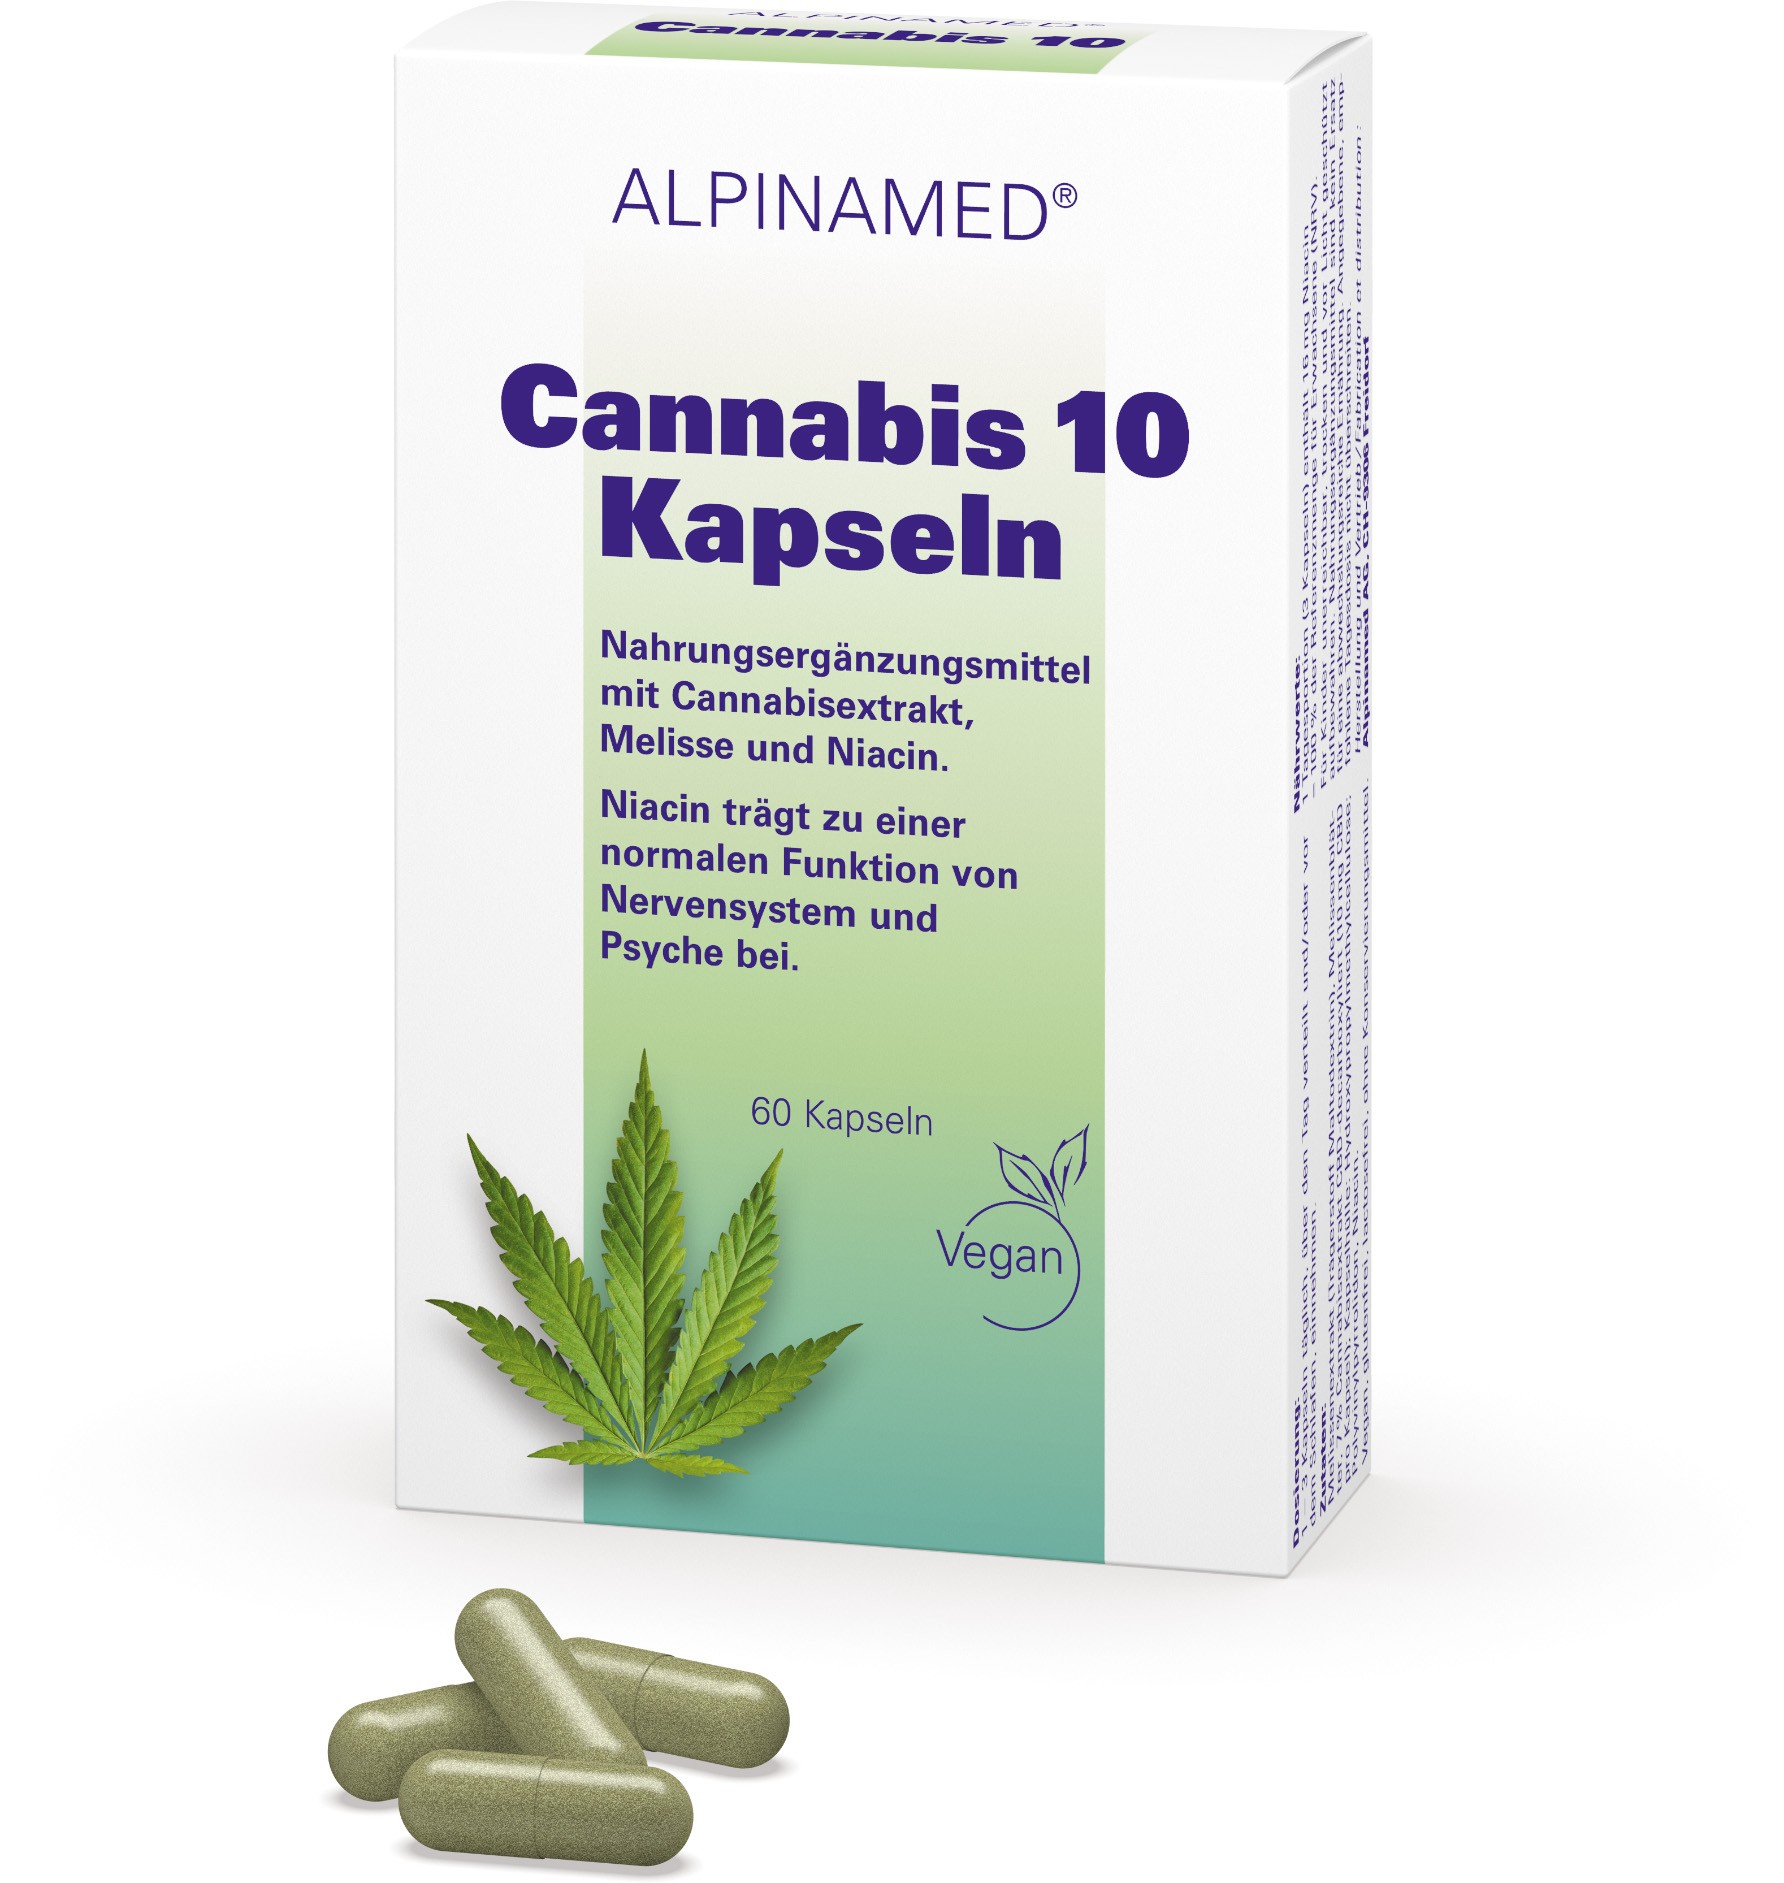 Image of Alpinamed Cannabis 10 Kapseln (60 Stk) bei CBD-Balance.ch